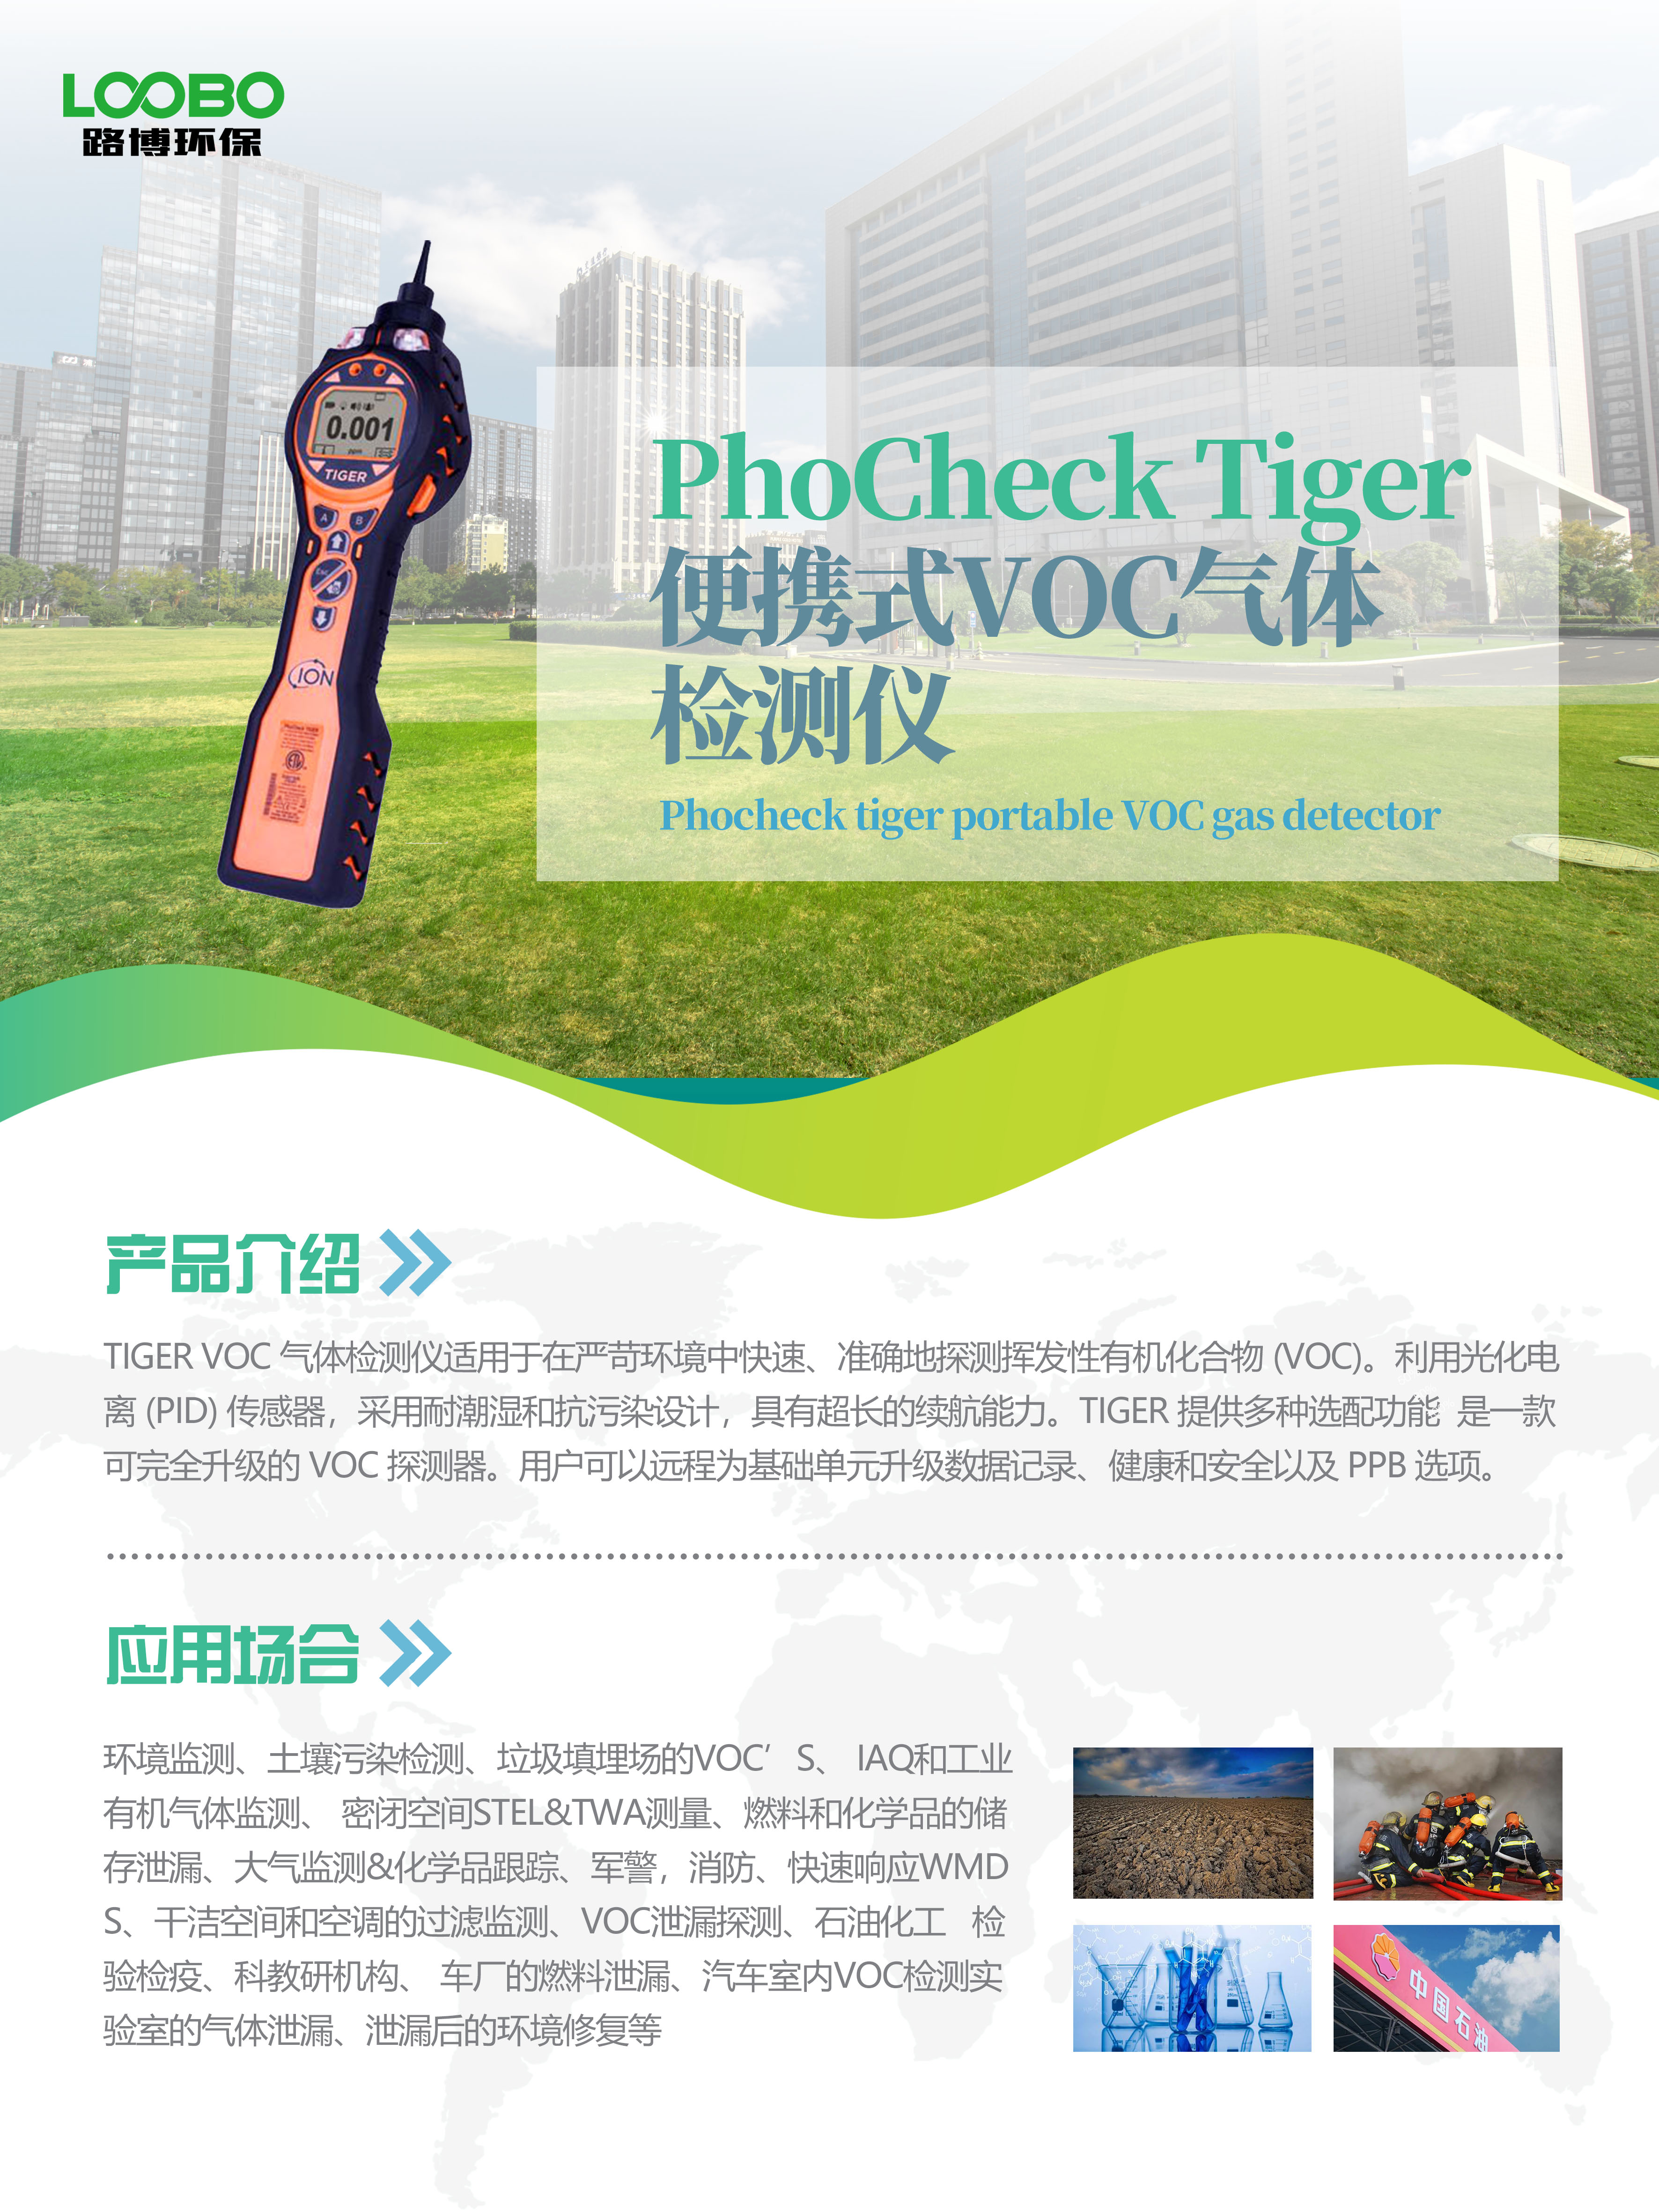 英国离子PhoCheck Tiger便携式VOC气体检测仪抗污染设计